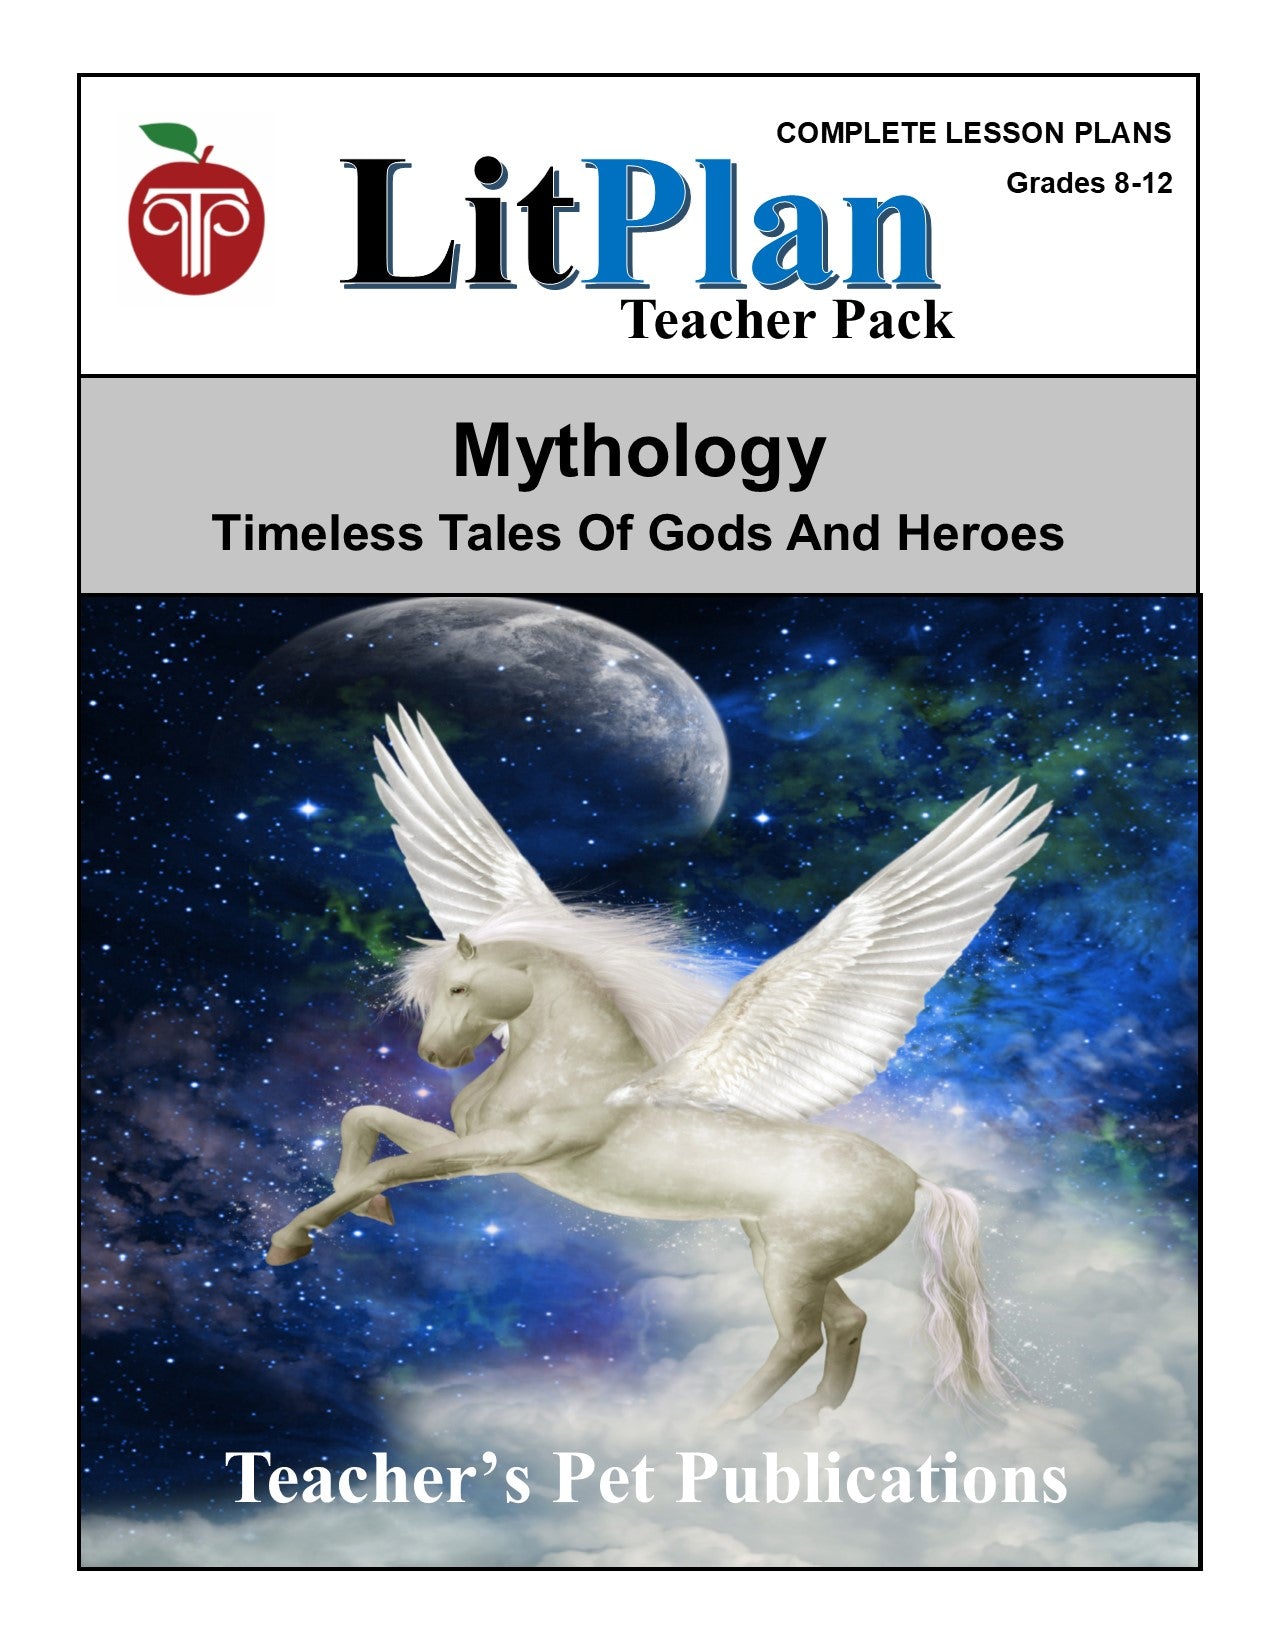 Mythology: LitPlan Teacher Pack Grades 8-12